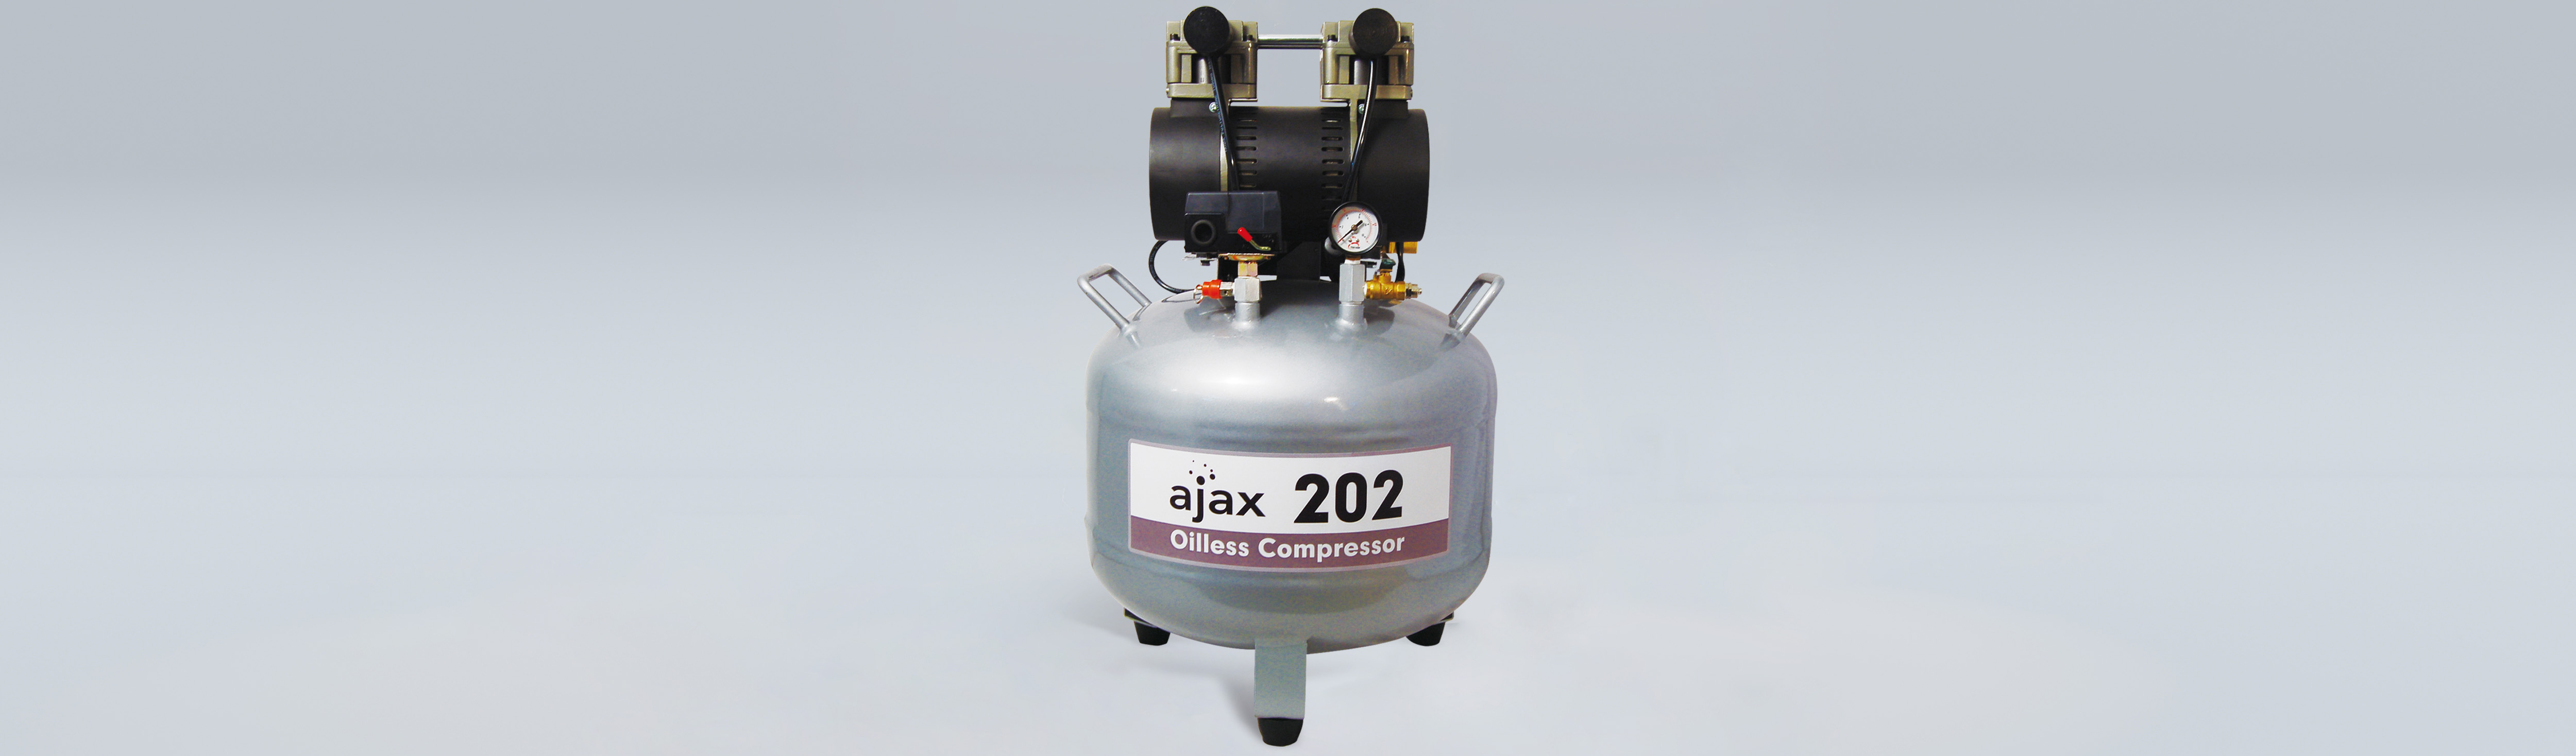 AJAX 202 Air Compressor